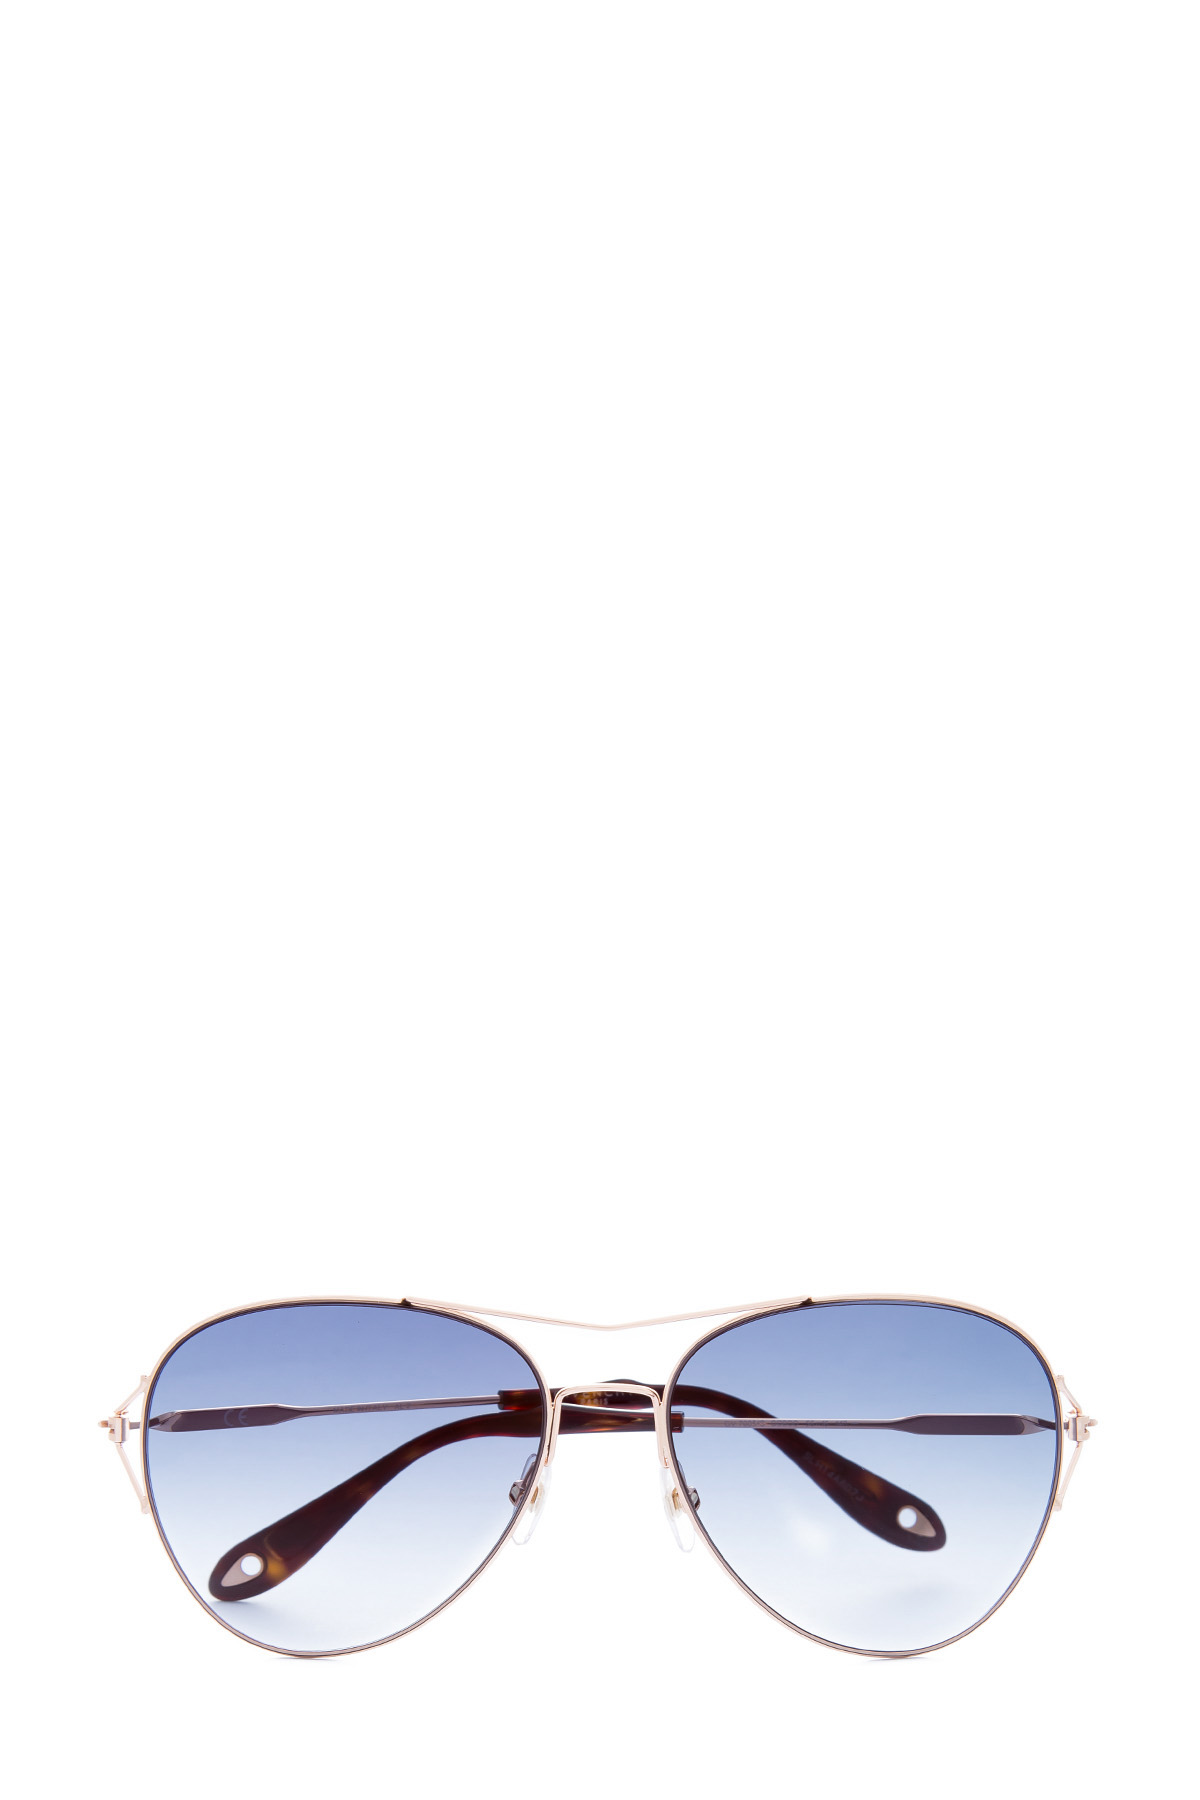 Очки-авиаторы с перемычками из металла золотистого цвета GIVENCHY (sunglasses), размер 36 - фото 1